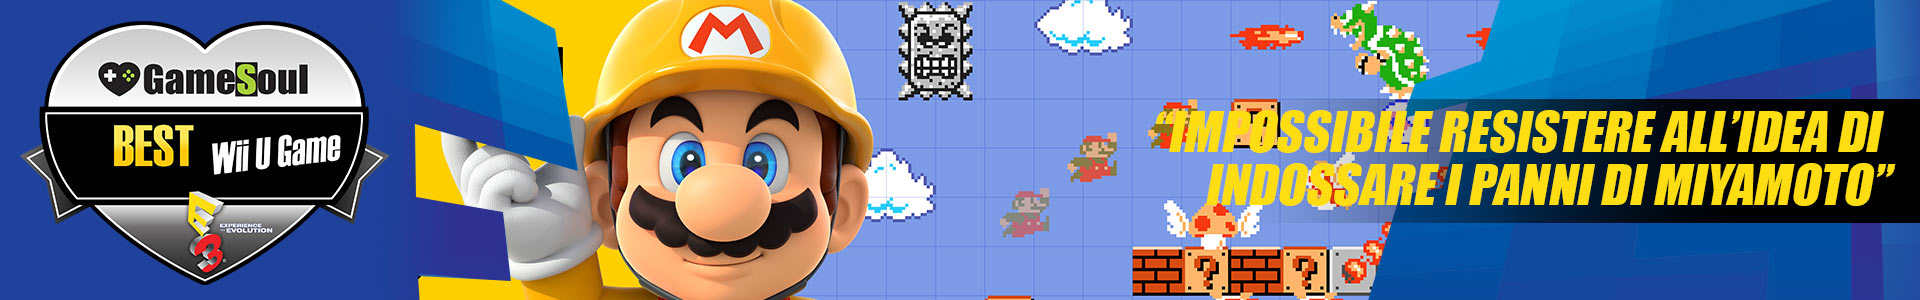 Mario-Maker-WiiU